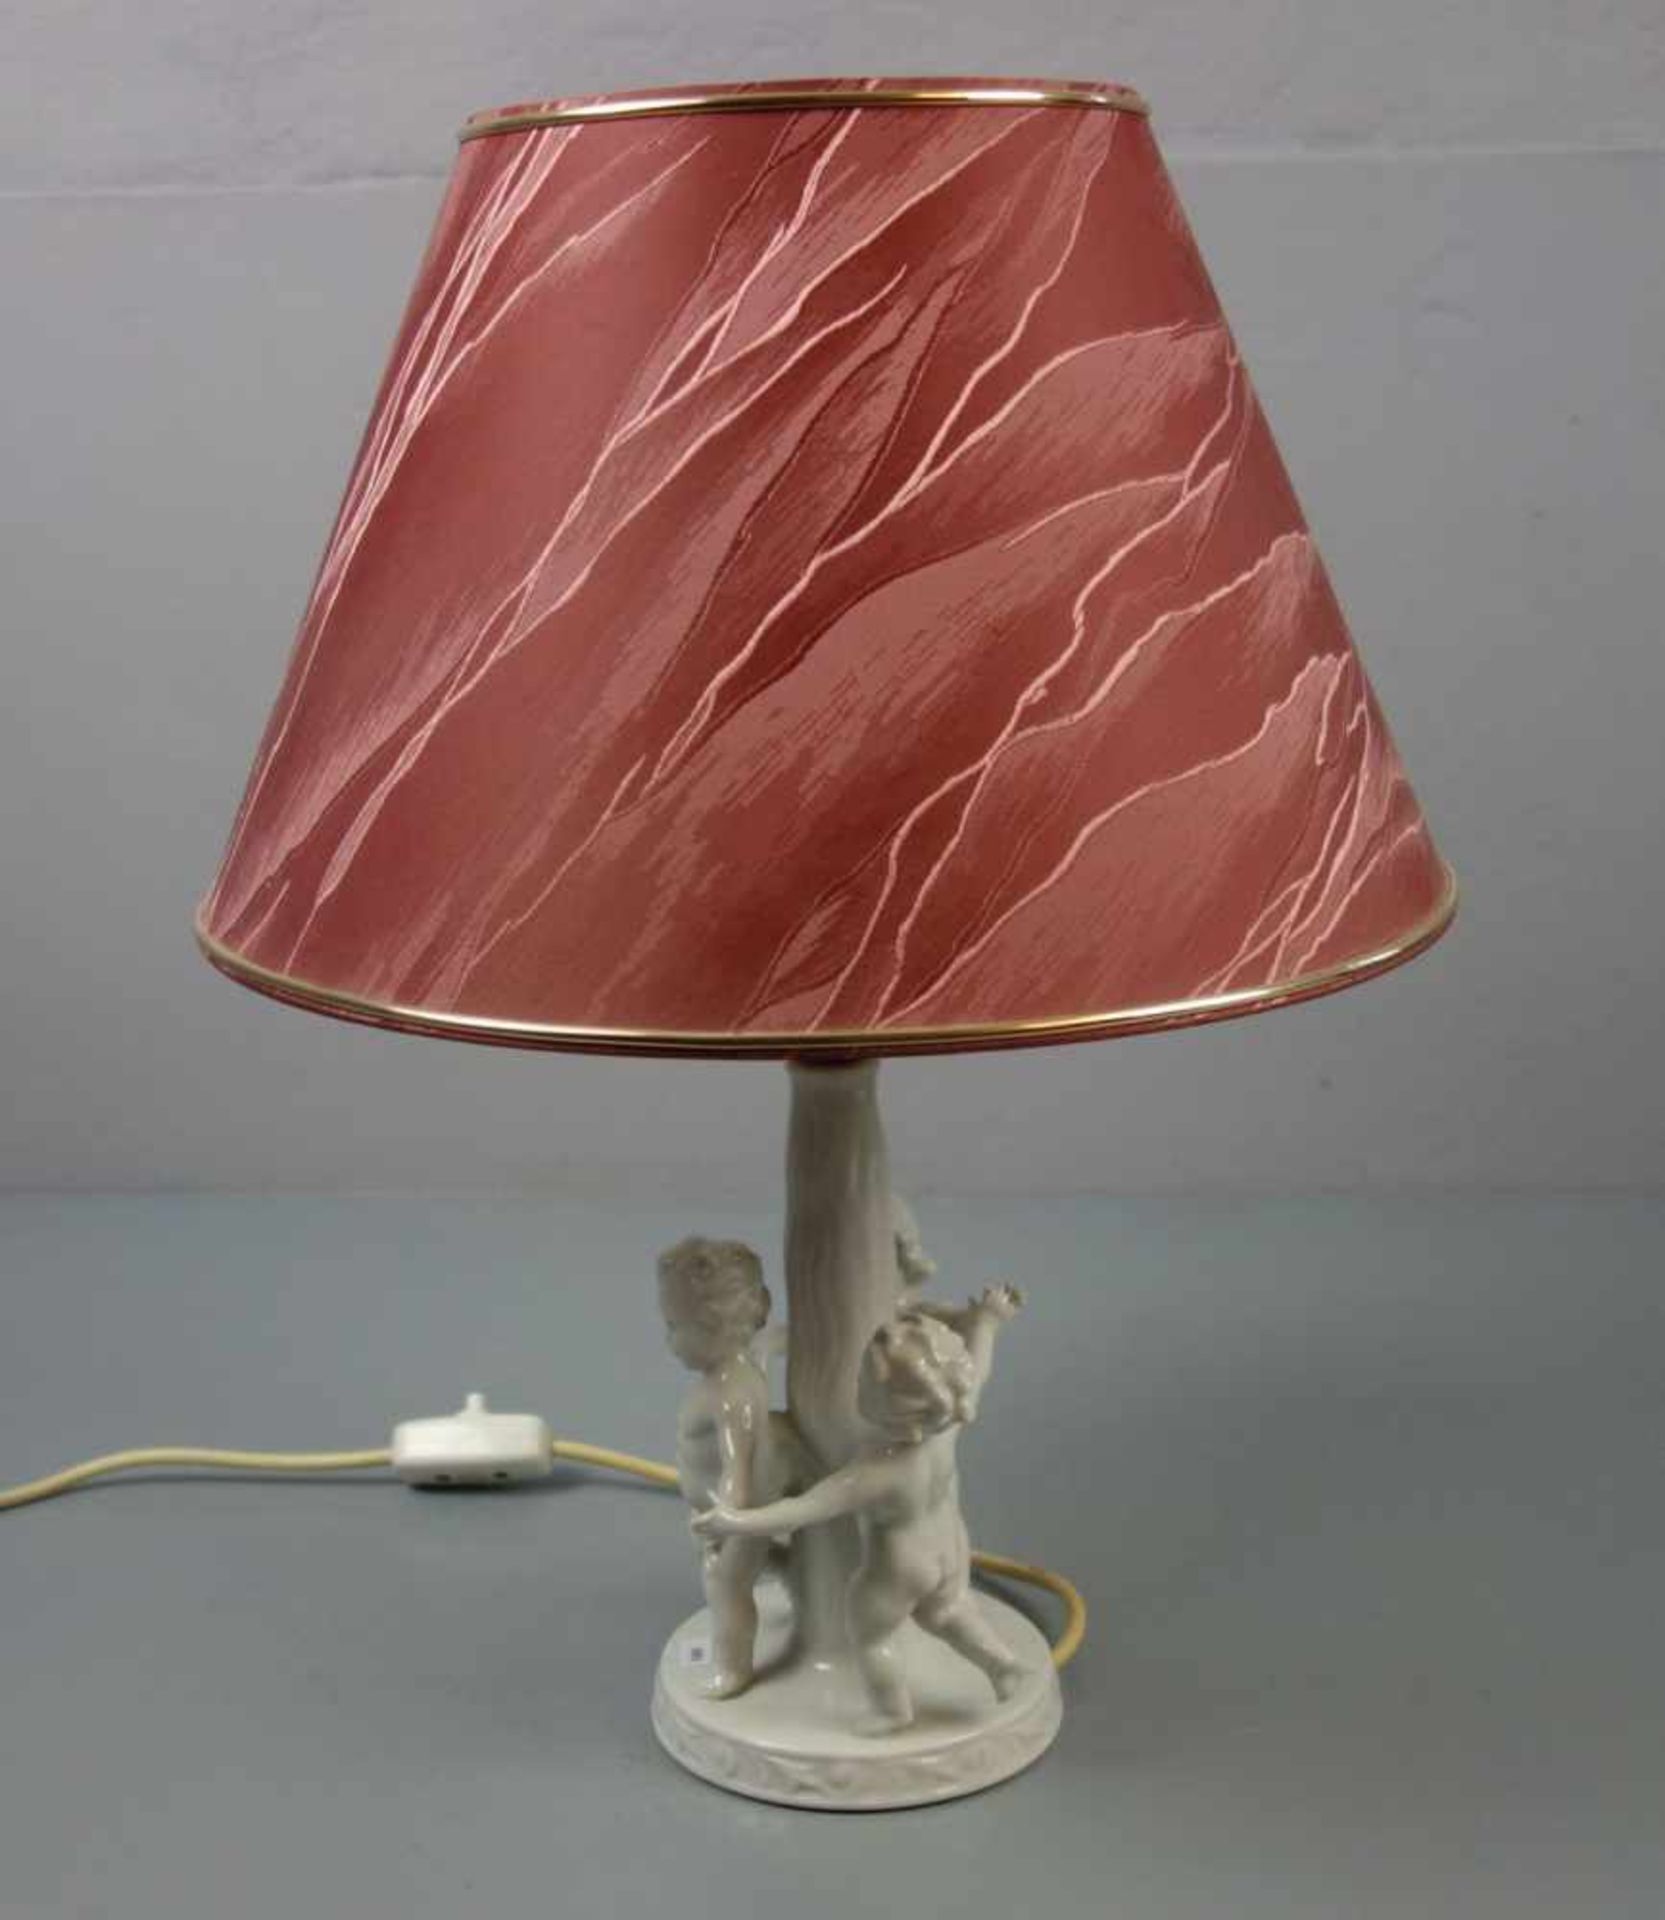 FIGÜRLICHE LAMPE / TISCHLAMPE "DER REIGEN" / table lamp, Weissporzellan (ungemarkt), einflammig - Bild 4 aus 4